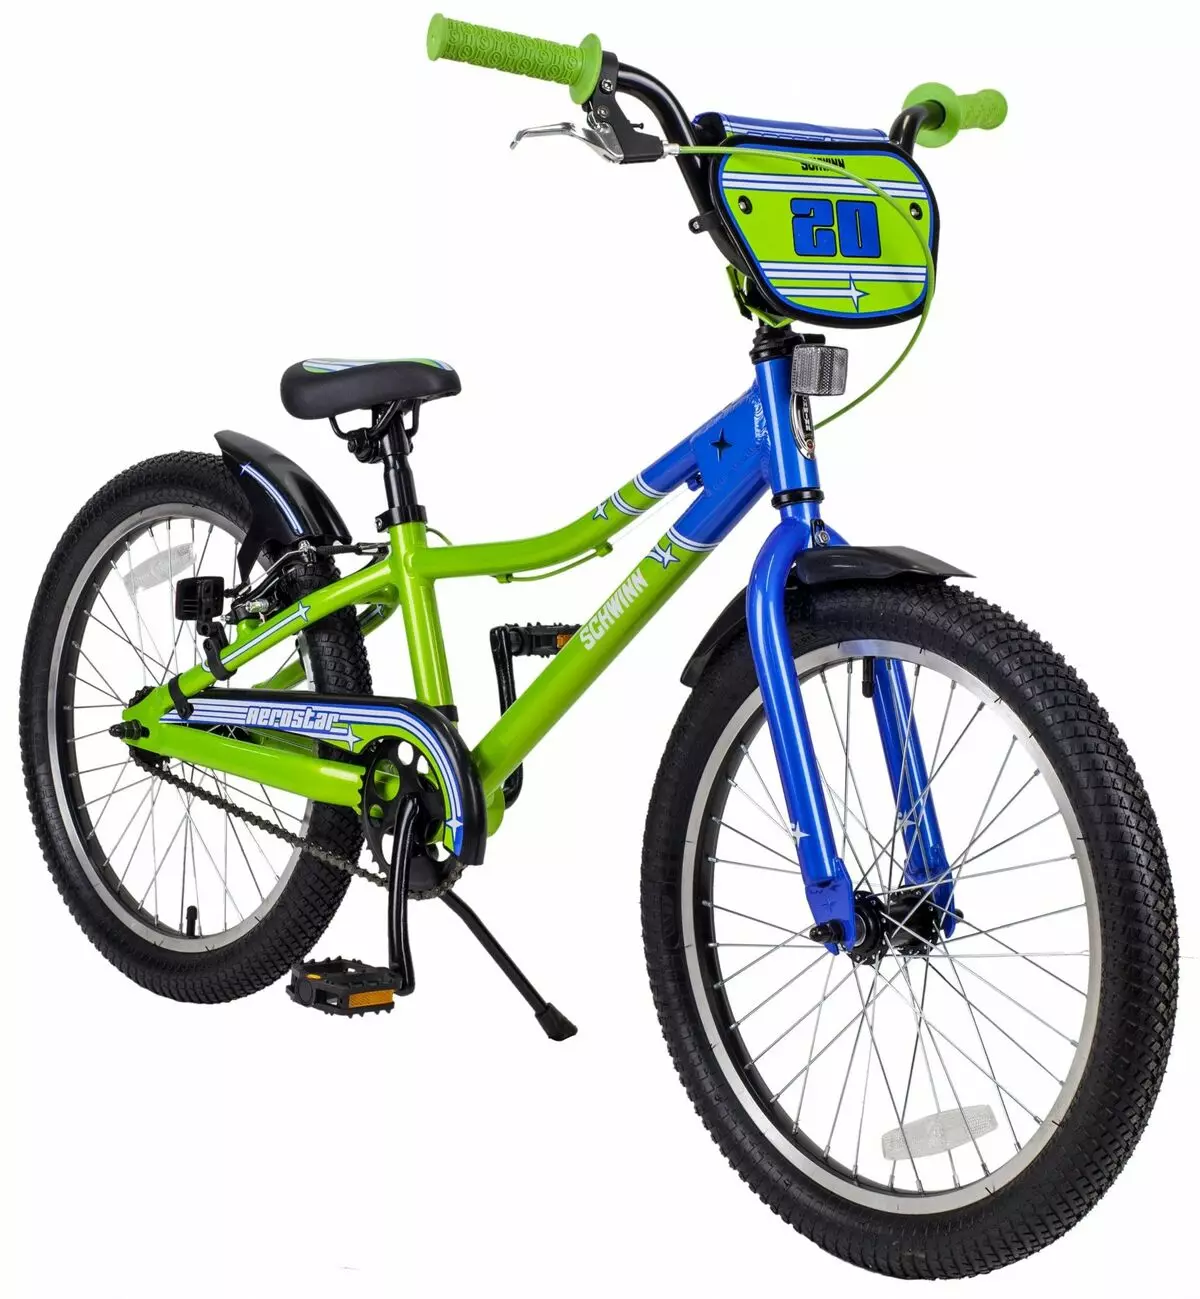 Велосипед для 11 лет мальчику. Велосипед Schwinn Aerostar. Велосипед подростковый Швин. Schwinn подростковый велосипед. Schwinn Aerostar детский.